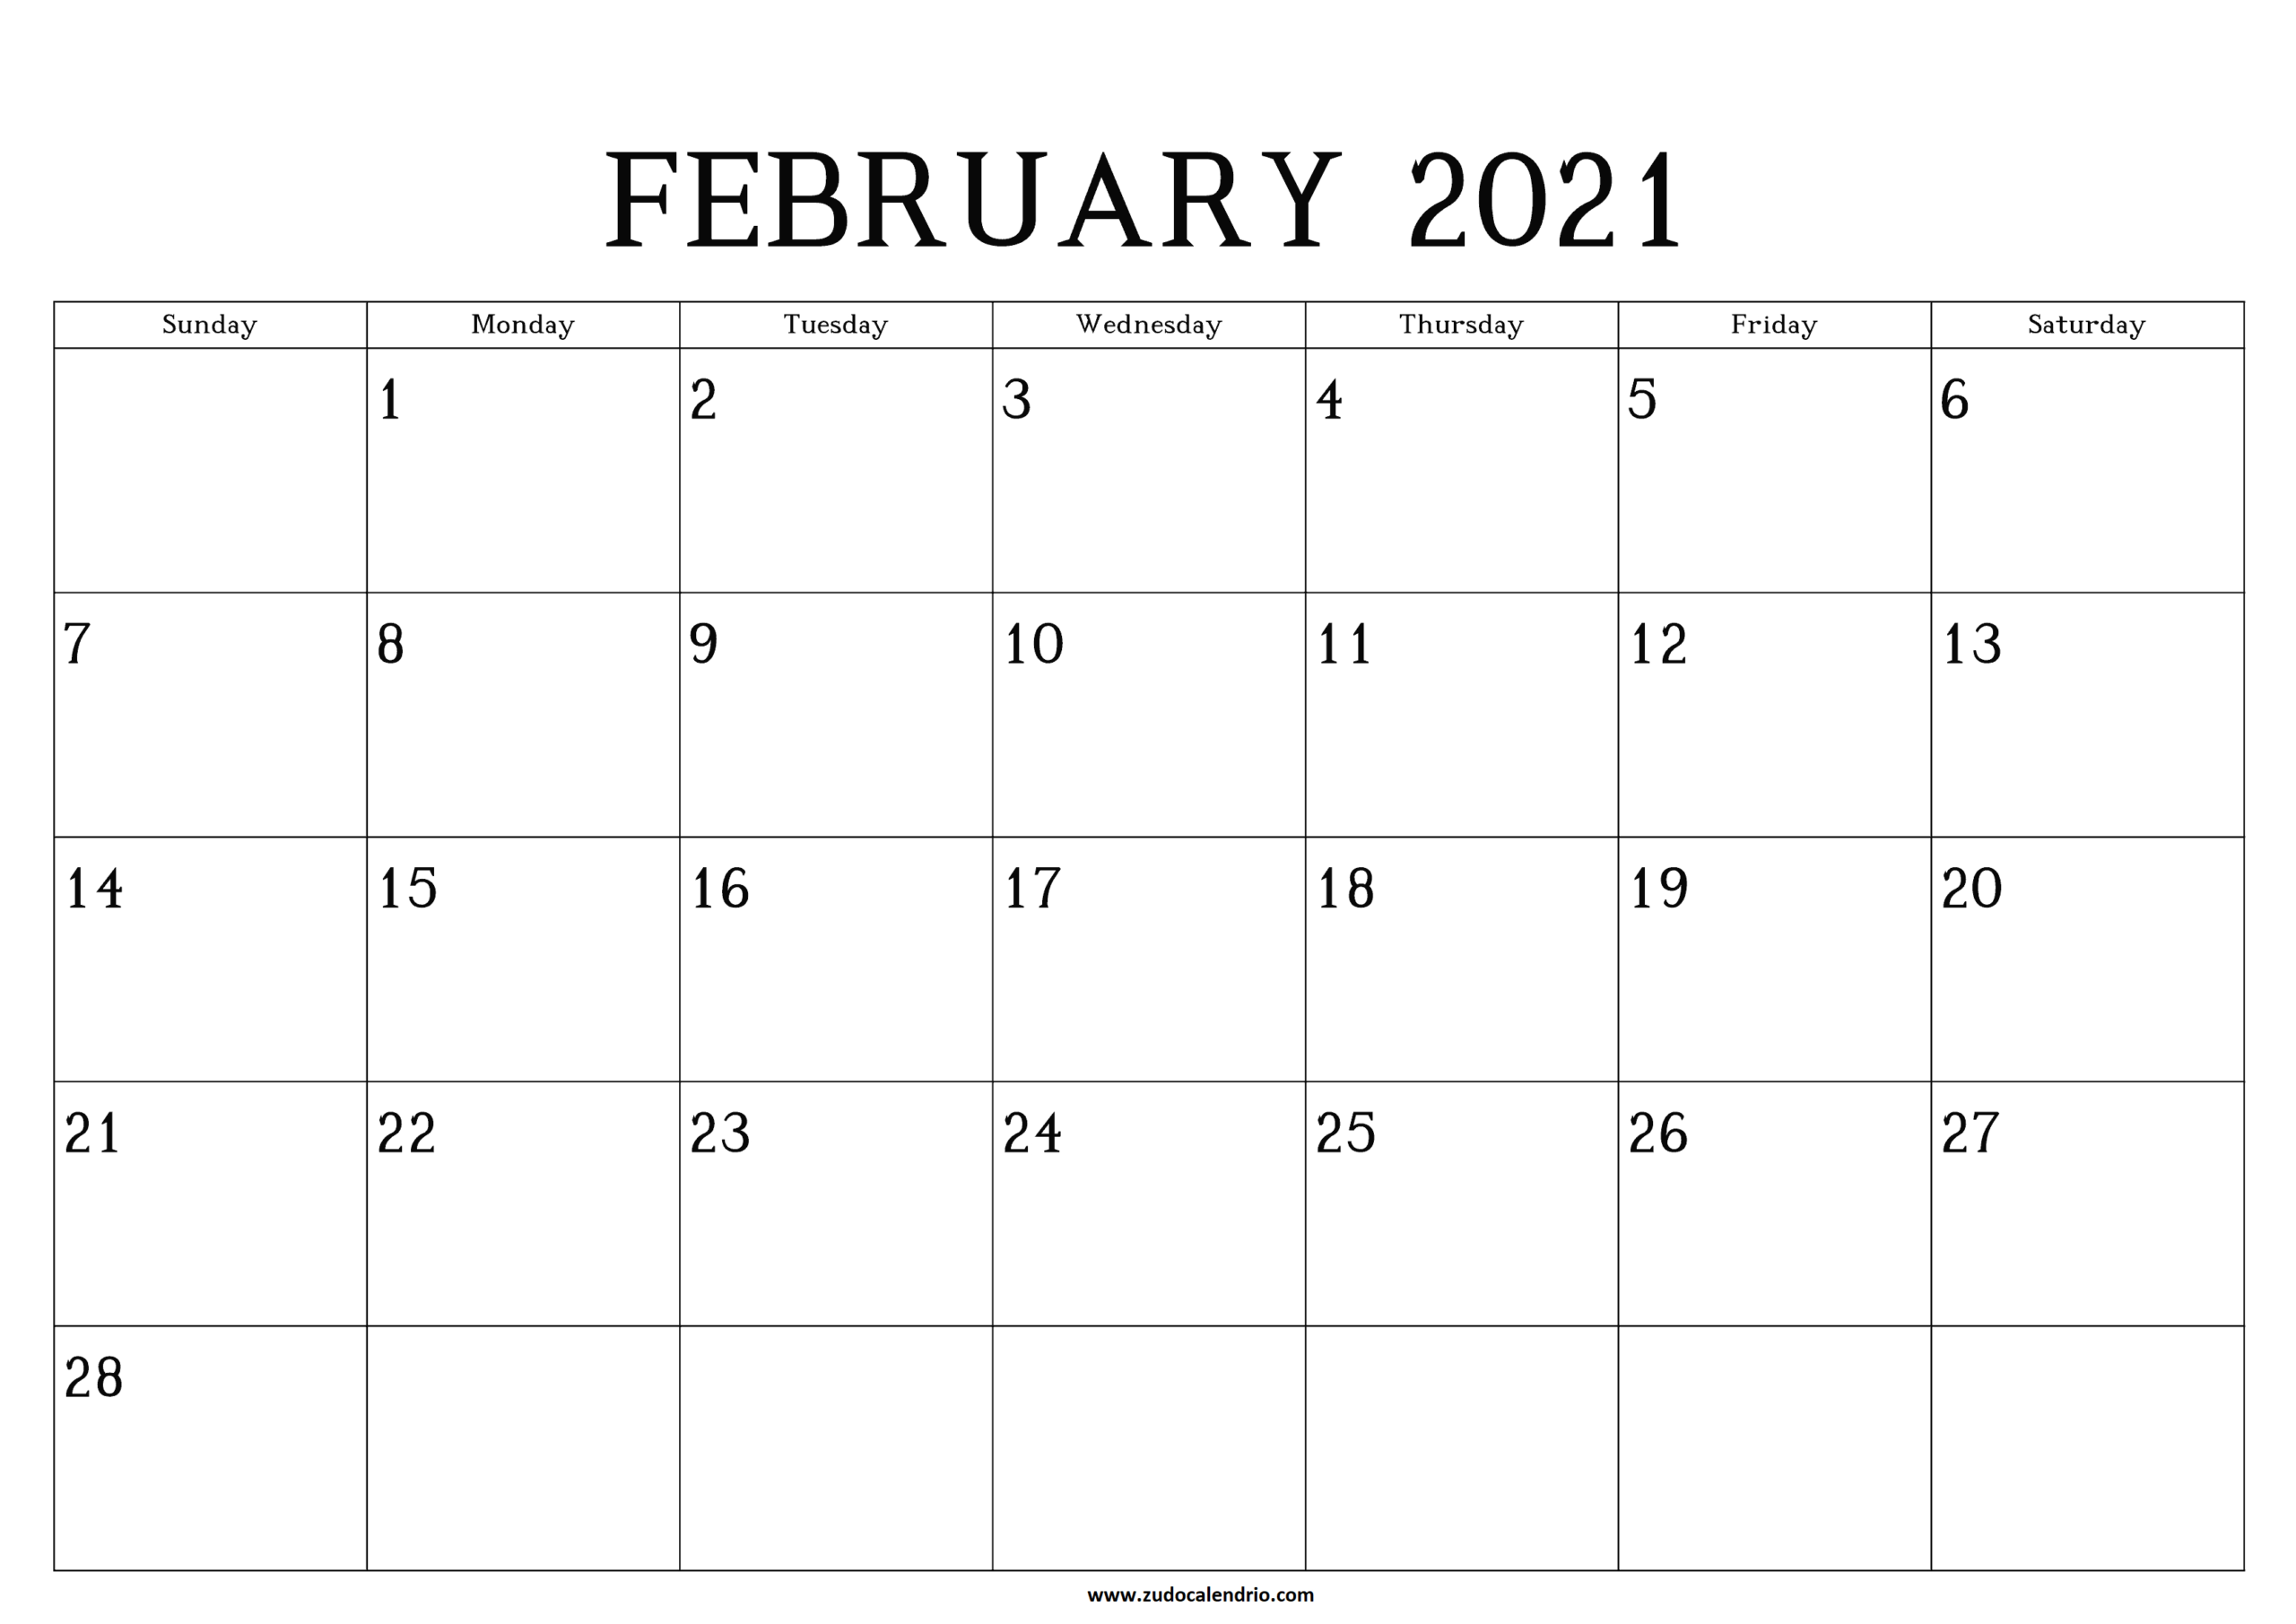 Printable February Calendar 2021 | Zudocalendrio  Feb 2021 Calendar